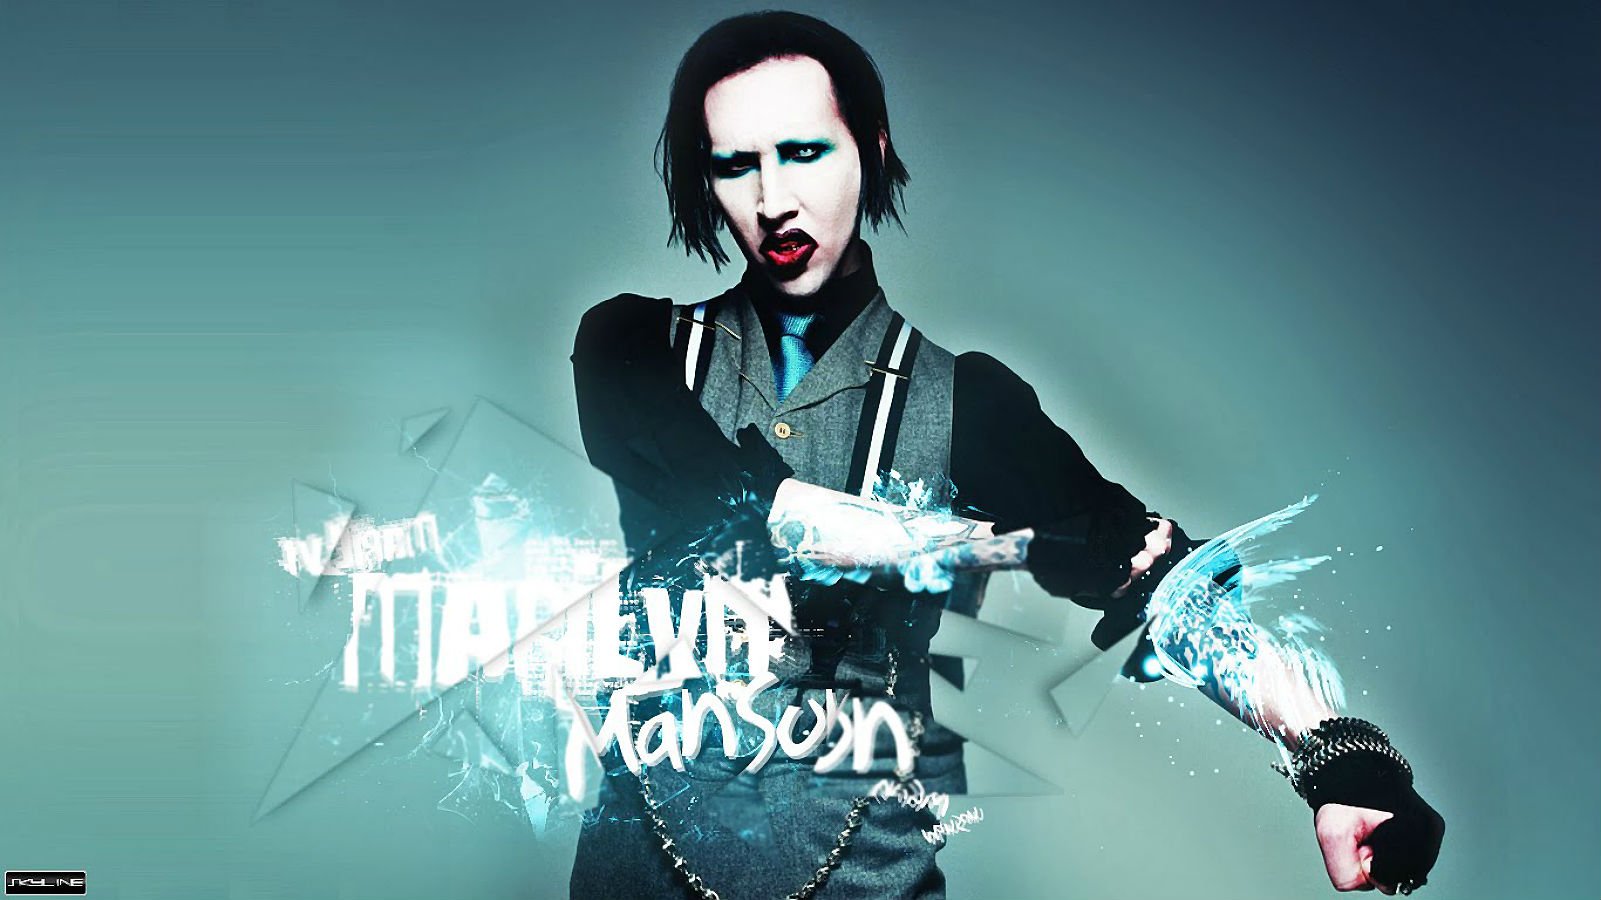 Heavy Metal Industrial Metal Marilyn Manson 1601x900